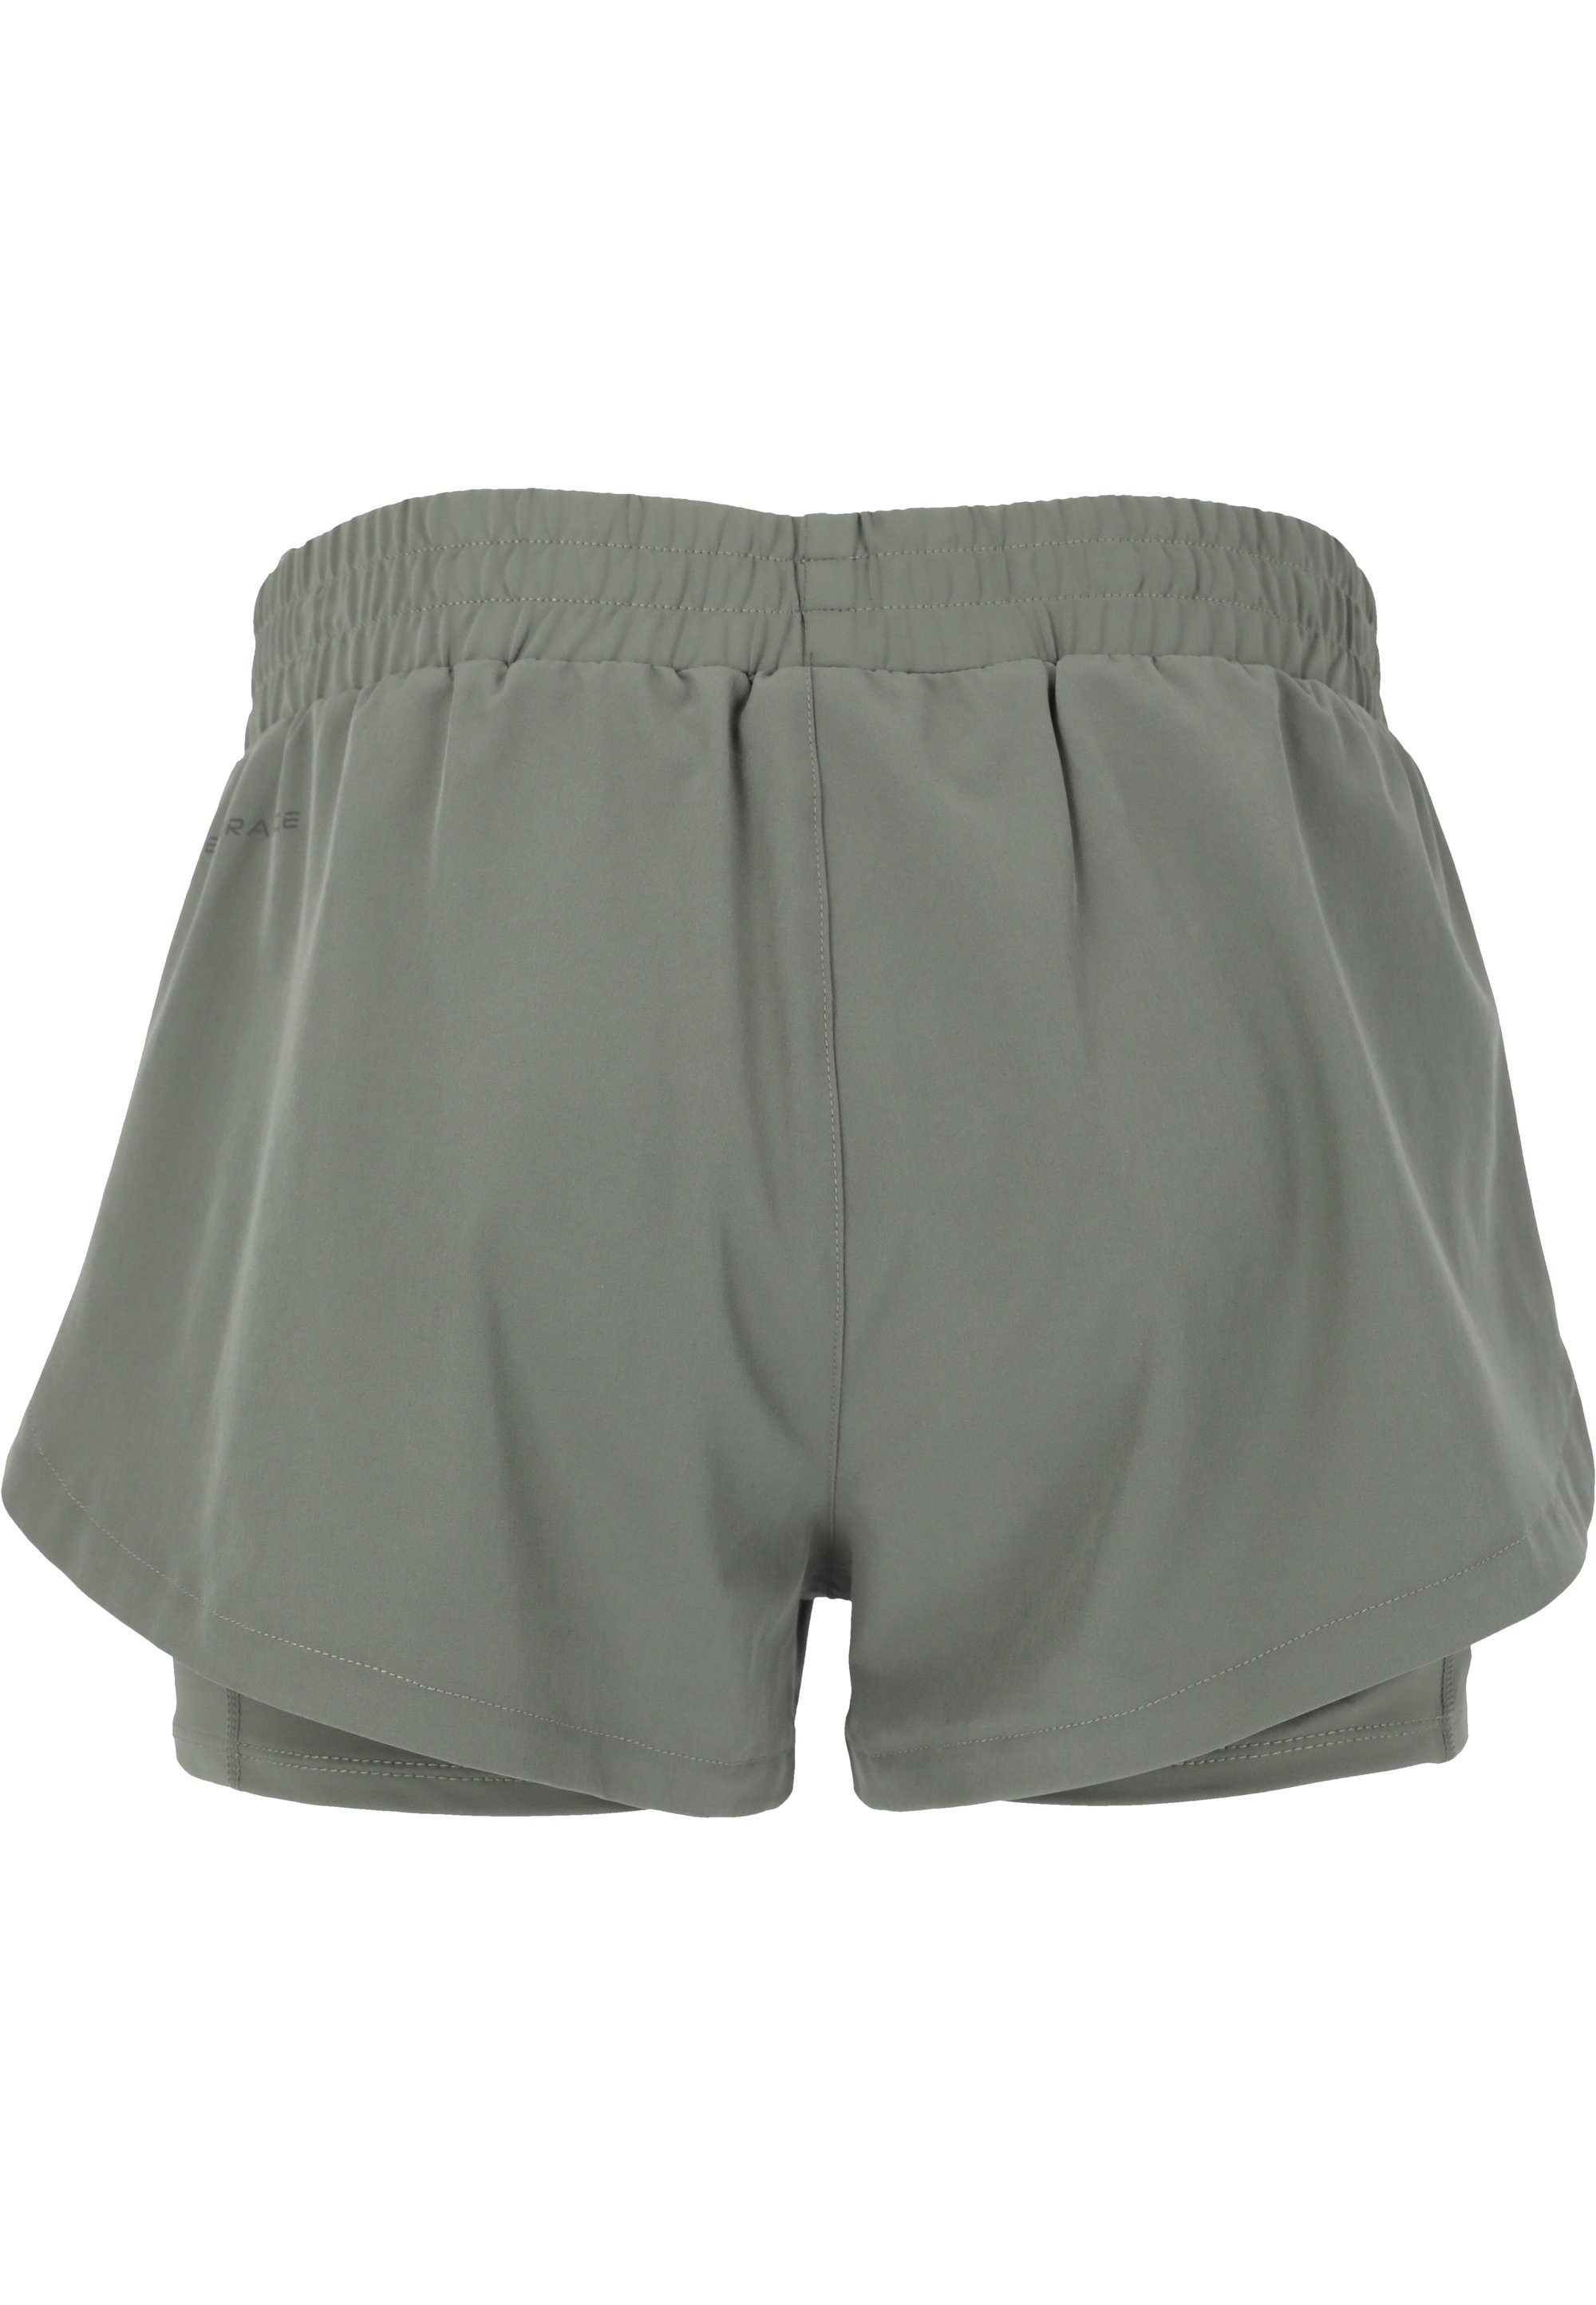 ENDURANCE mit praktischer grün Yarol Shorts 2-in-1-Funktion